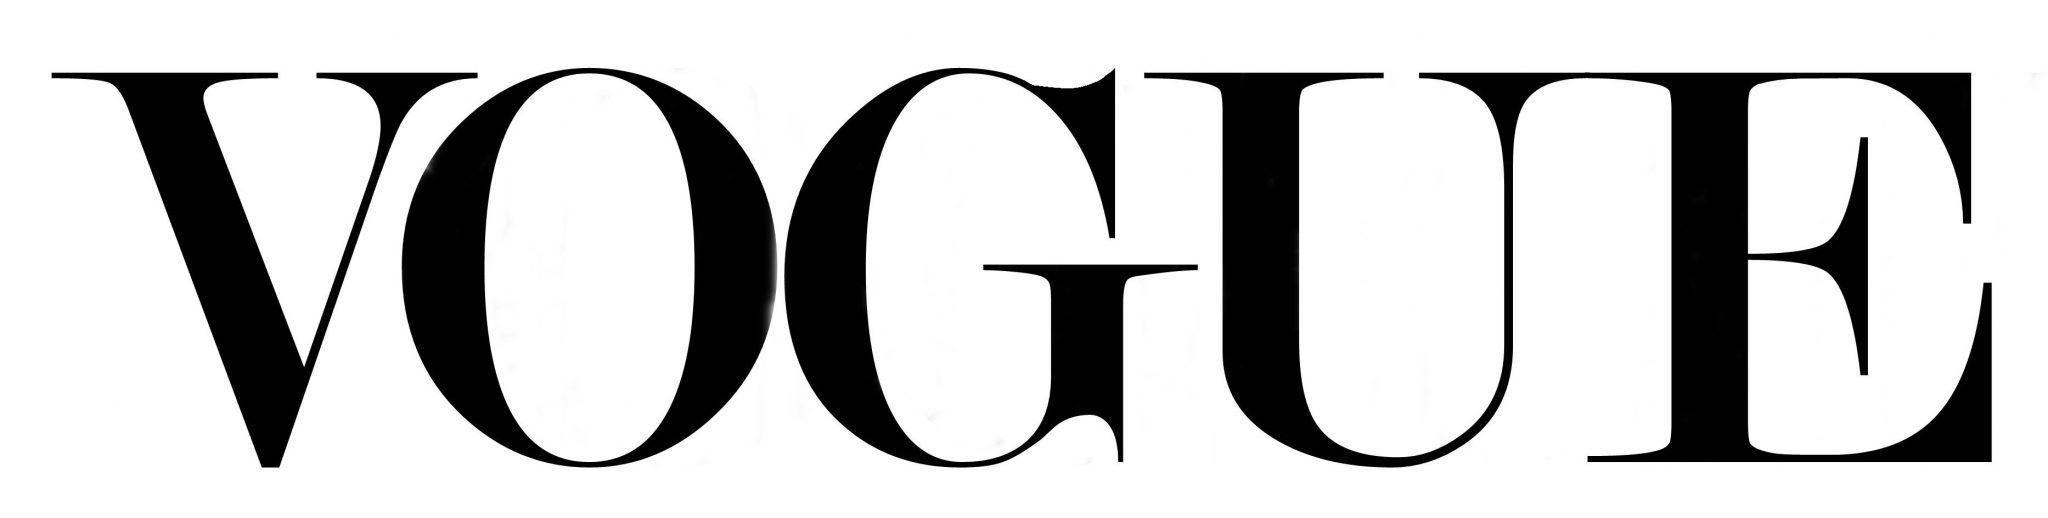 Vogue.com Logo - Vogue Logo Wallpaper. The Fashion Trade Show 16th January